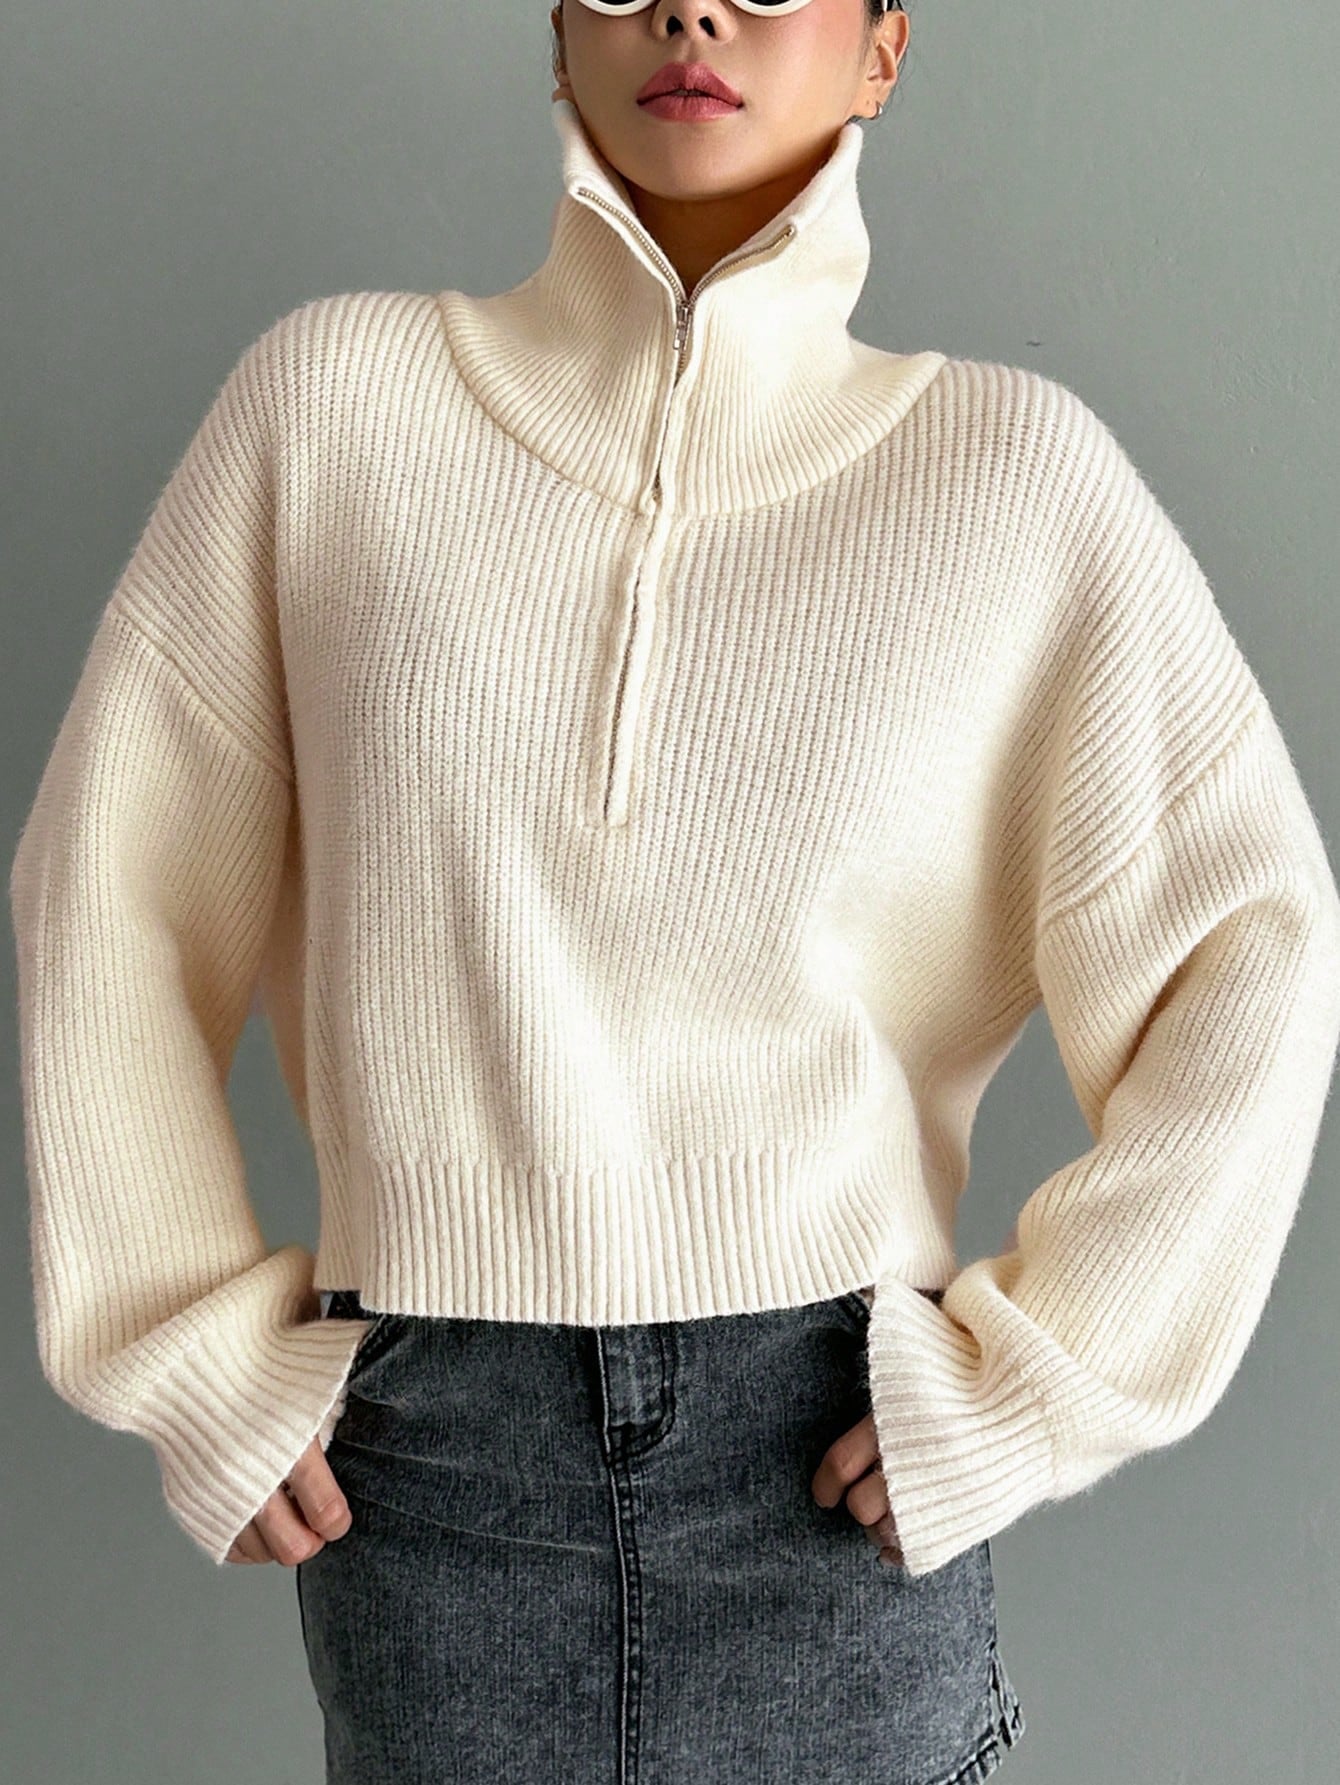 Half Zipper Sweater With Drop Shoulder Sleeves